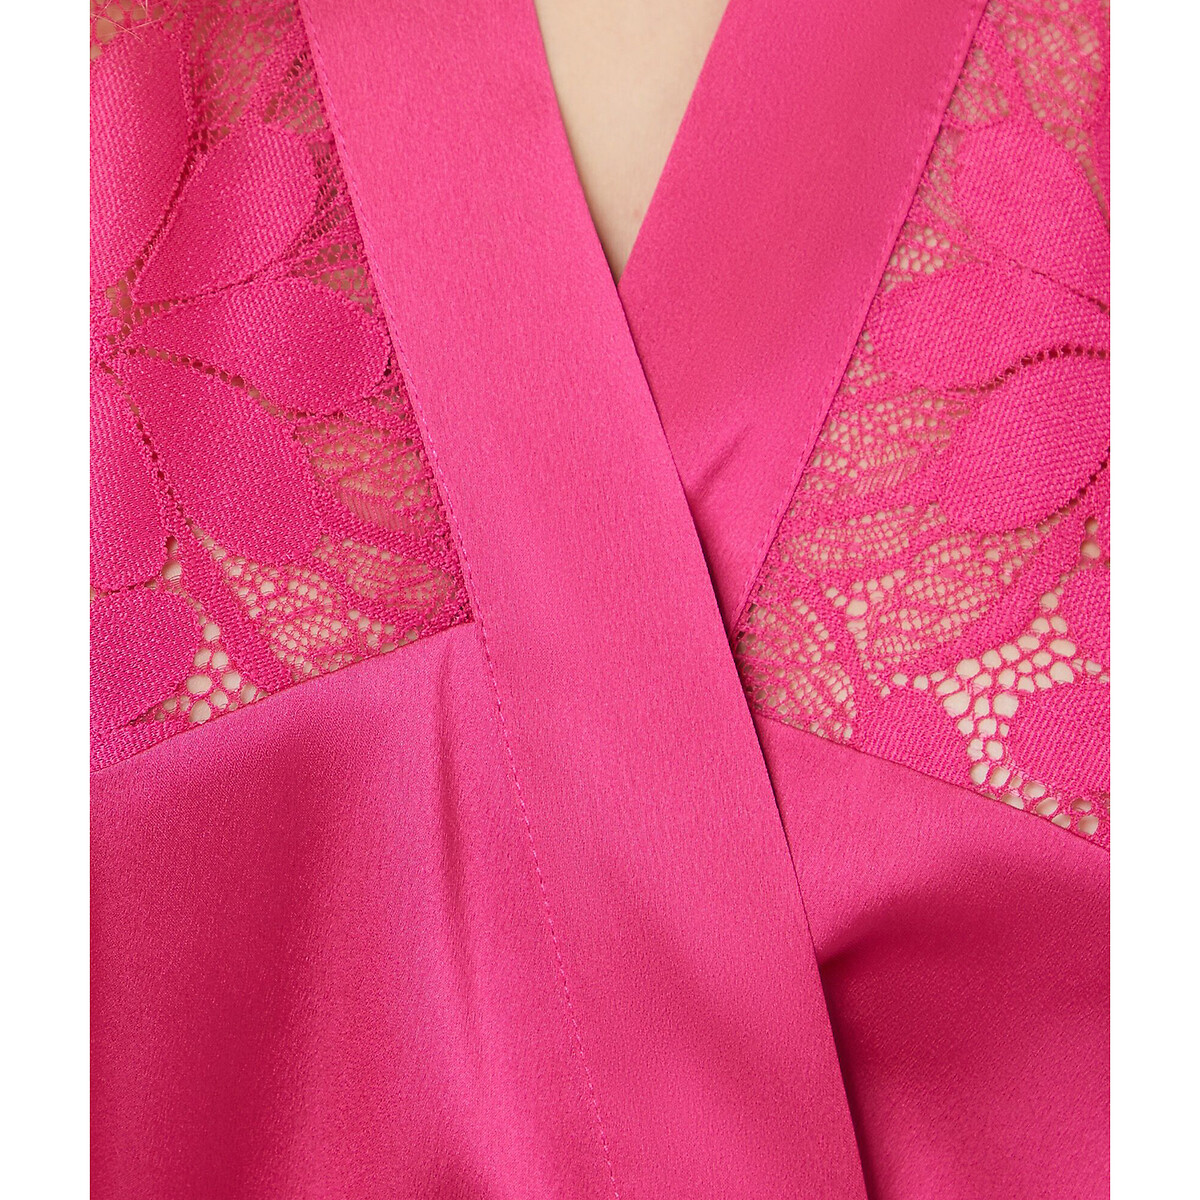 Платье Домашнее длинное Epatante XL розовый LaRedoute, размер XL - фото 4